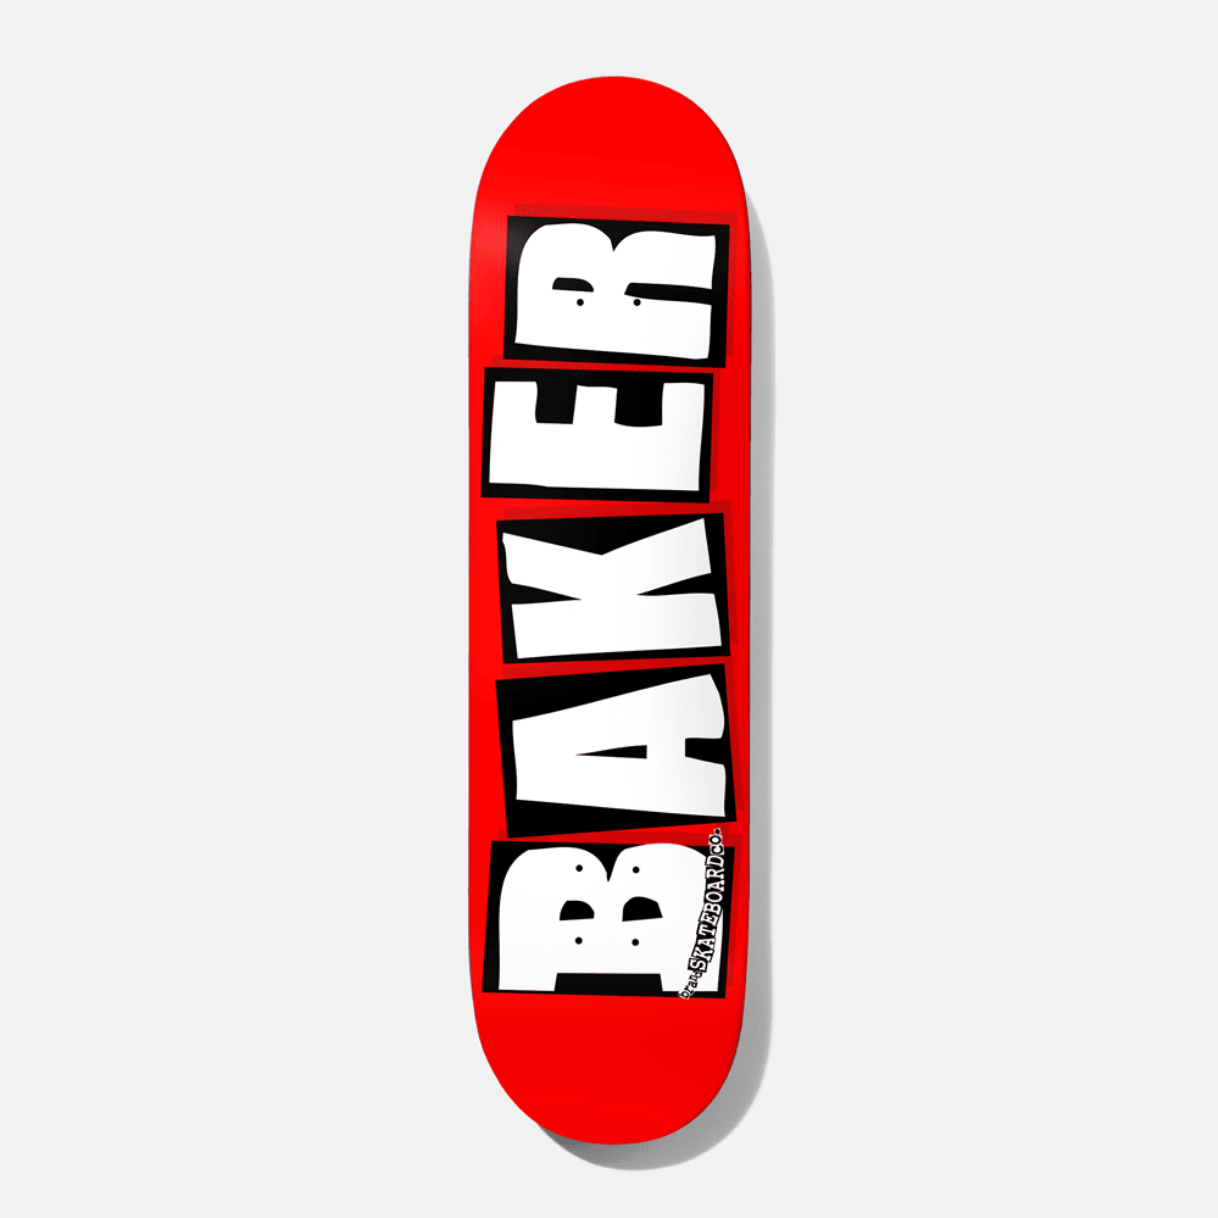 Baker Skateboards Brand Logo White 8.0"